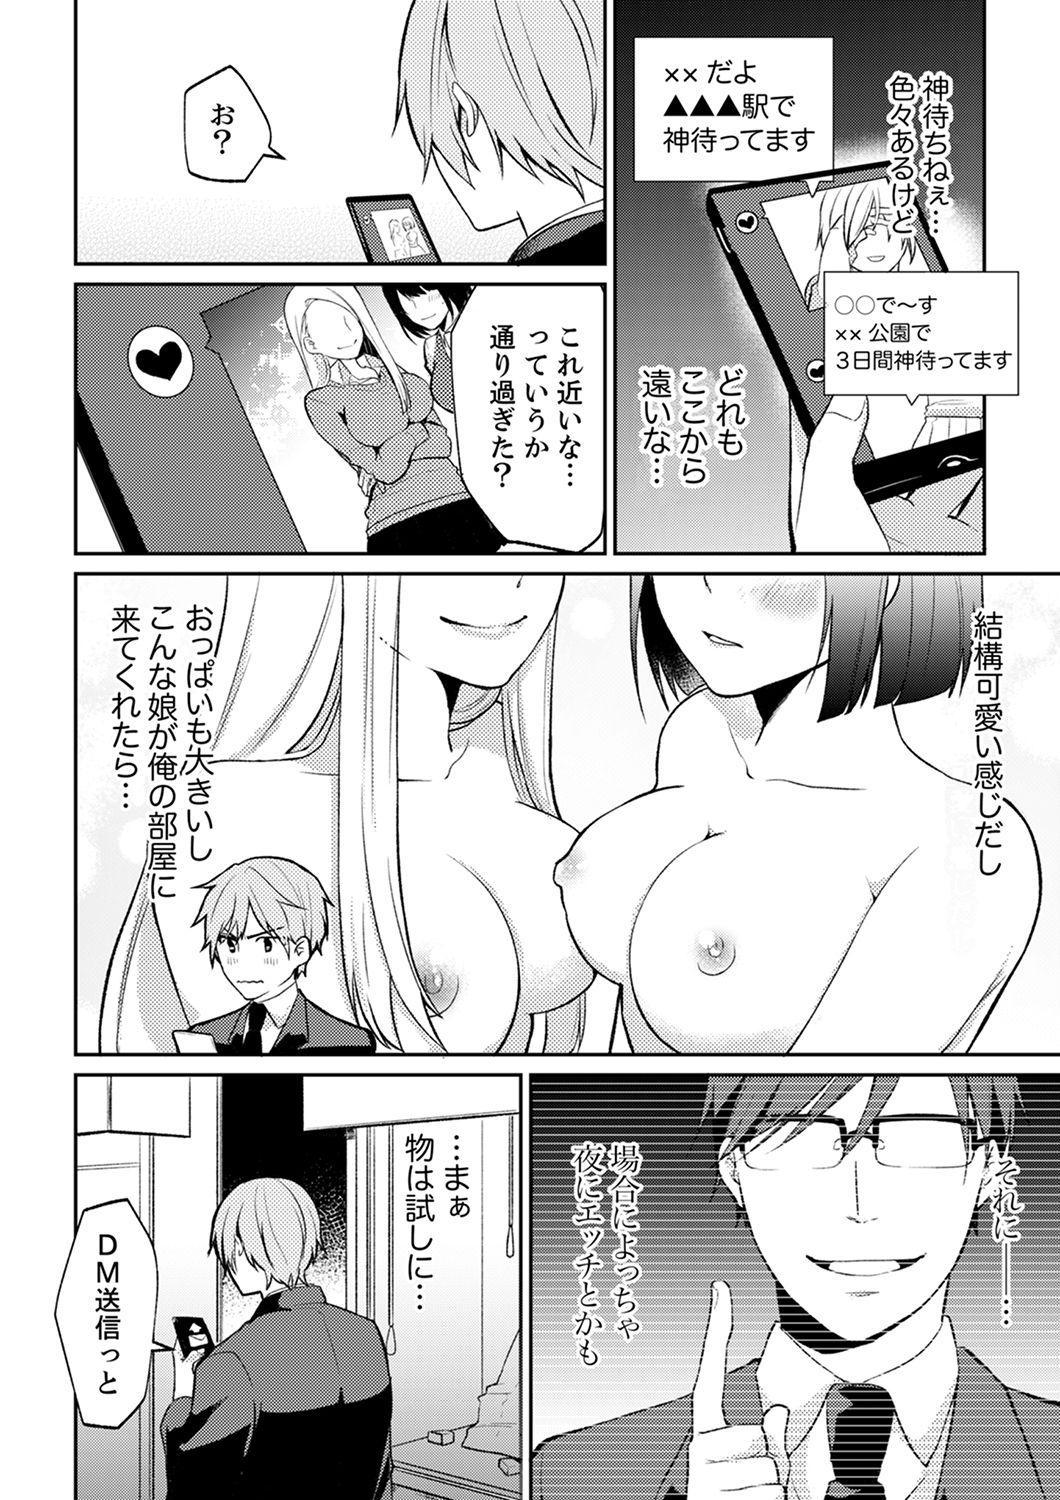 Perfect Body Tachippanashi no Sore... Irechau no? "Kamimachi" Shiteta Joshi o Omochikaeri Shite... Ballbusting - Page 6